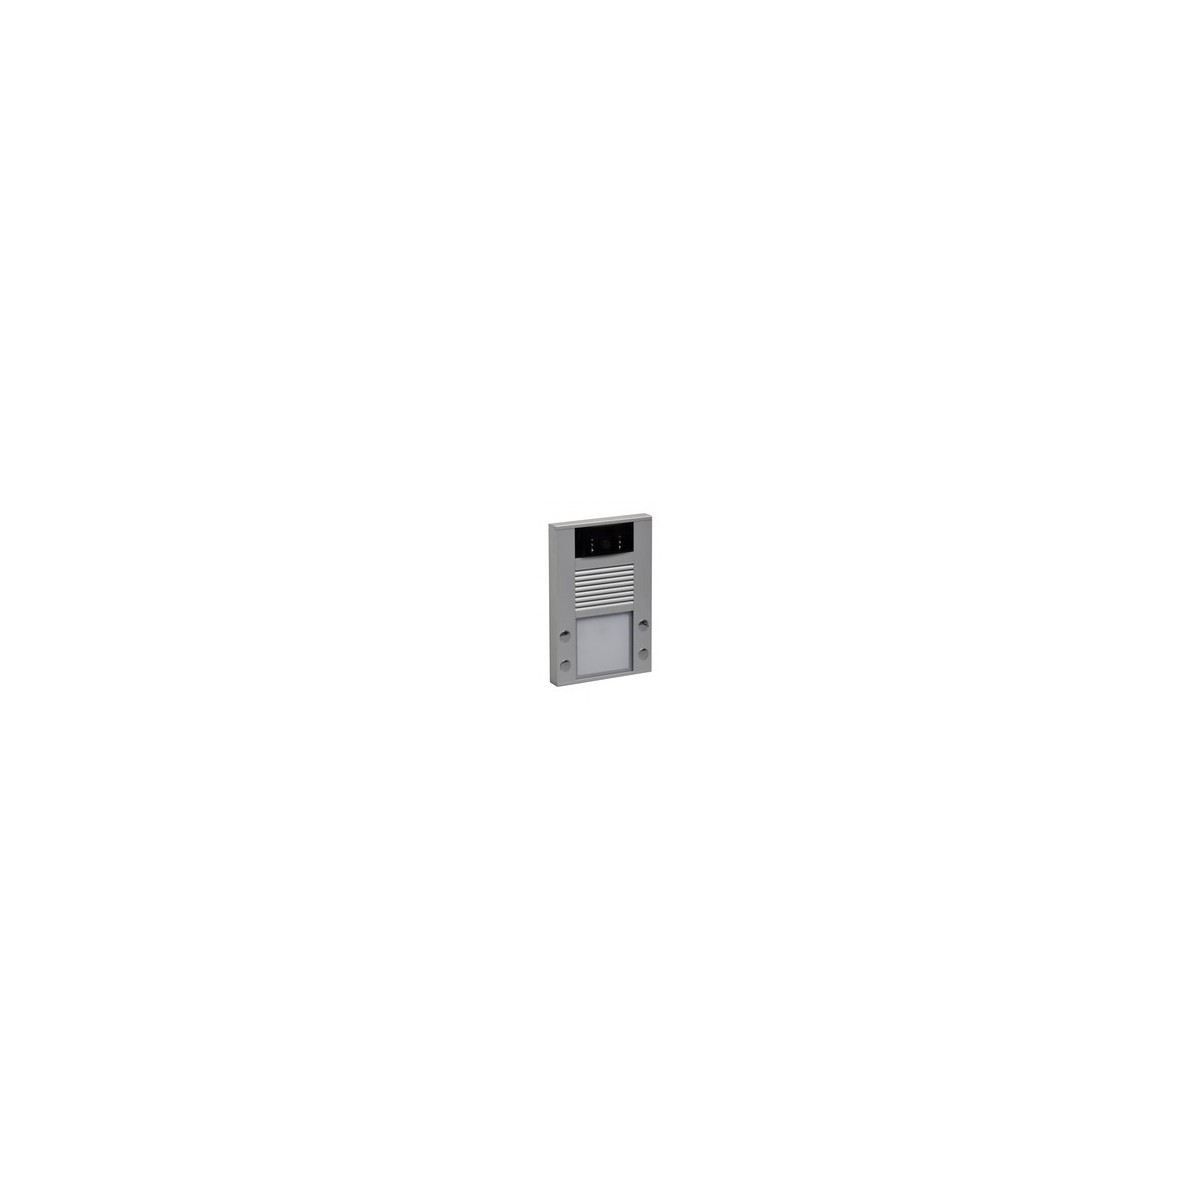 WANTEC 4235 - Grau - Aluminium - 10-100Base-T(X) - IEEE 802.3af - 1280 x 720 Pixel - 720p